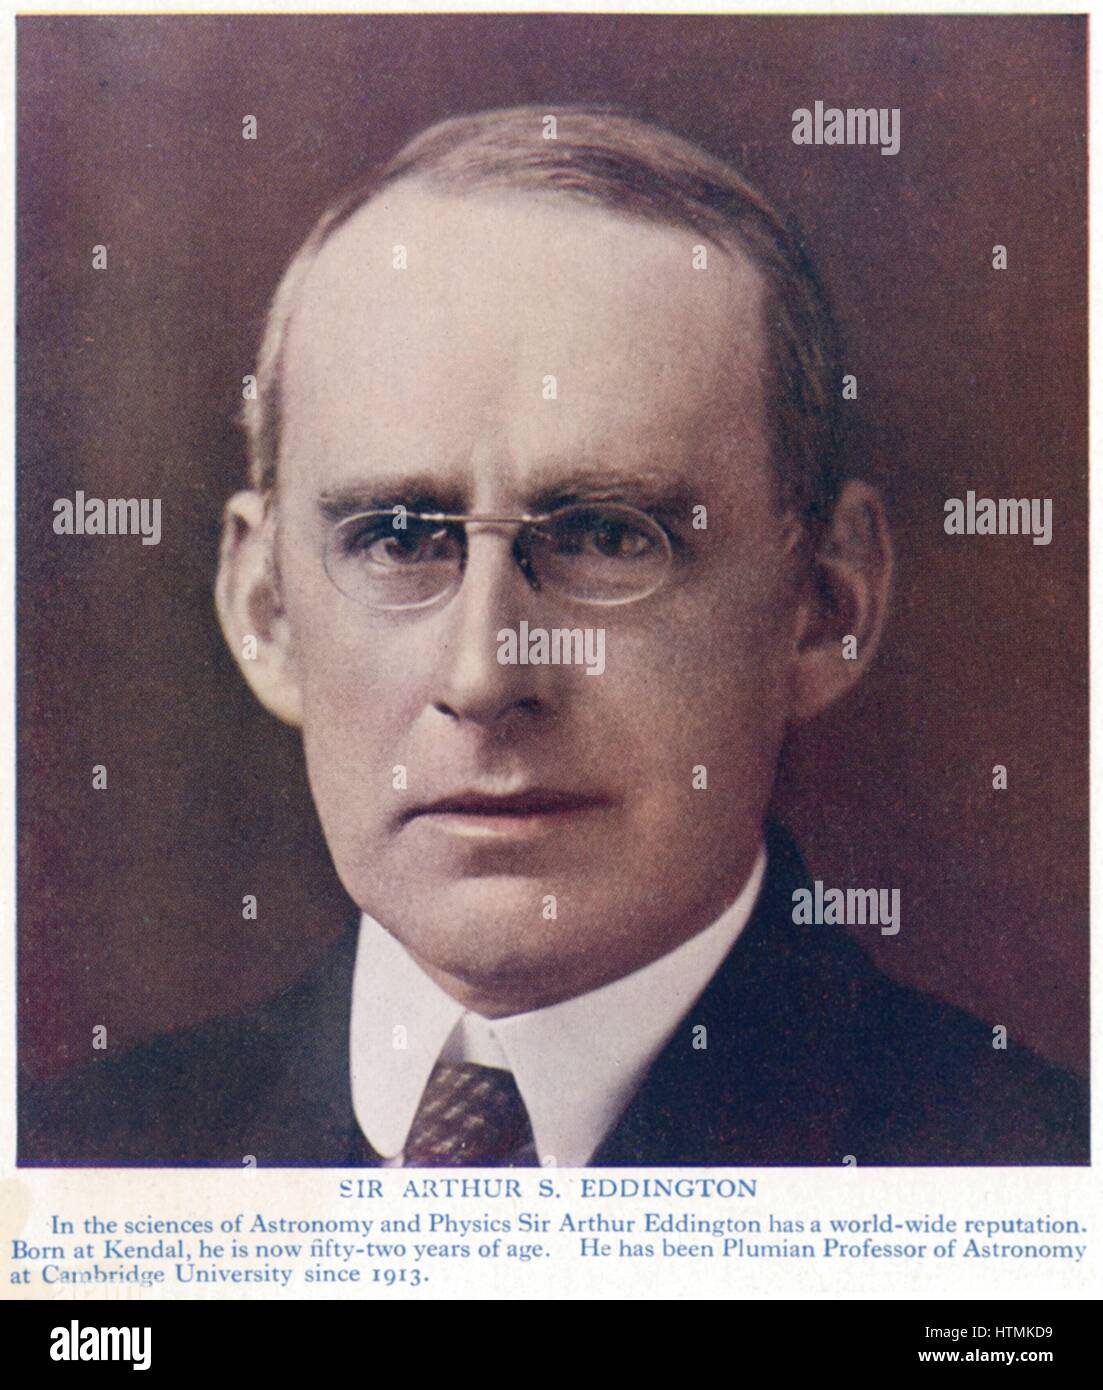 Arthur Stanley Eddington (1882-1944) britische Astronom Physiker und Mathematiker. Unterstützer und Förderer von Einsteins Theorien der Relativität Stockfoto